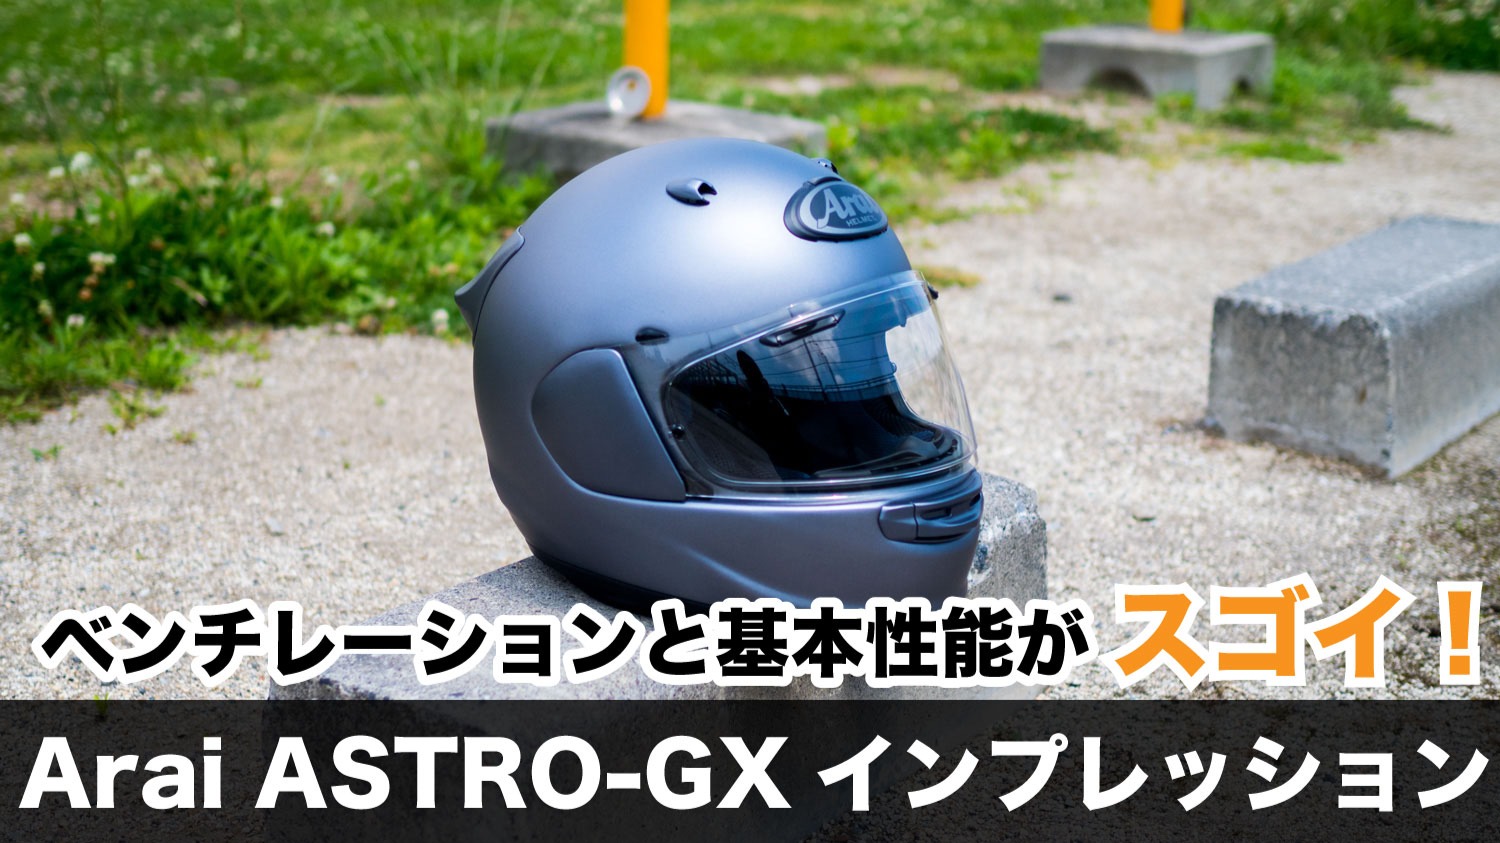 新品】Arai Astro-gx グレー フルフェイスヘルメット Mサイズ - バイク